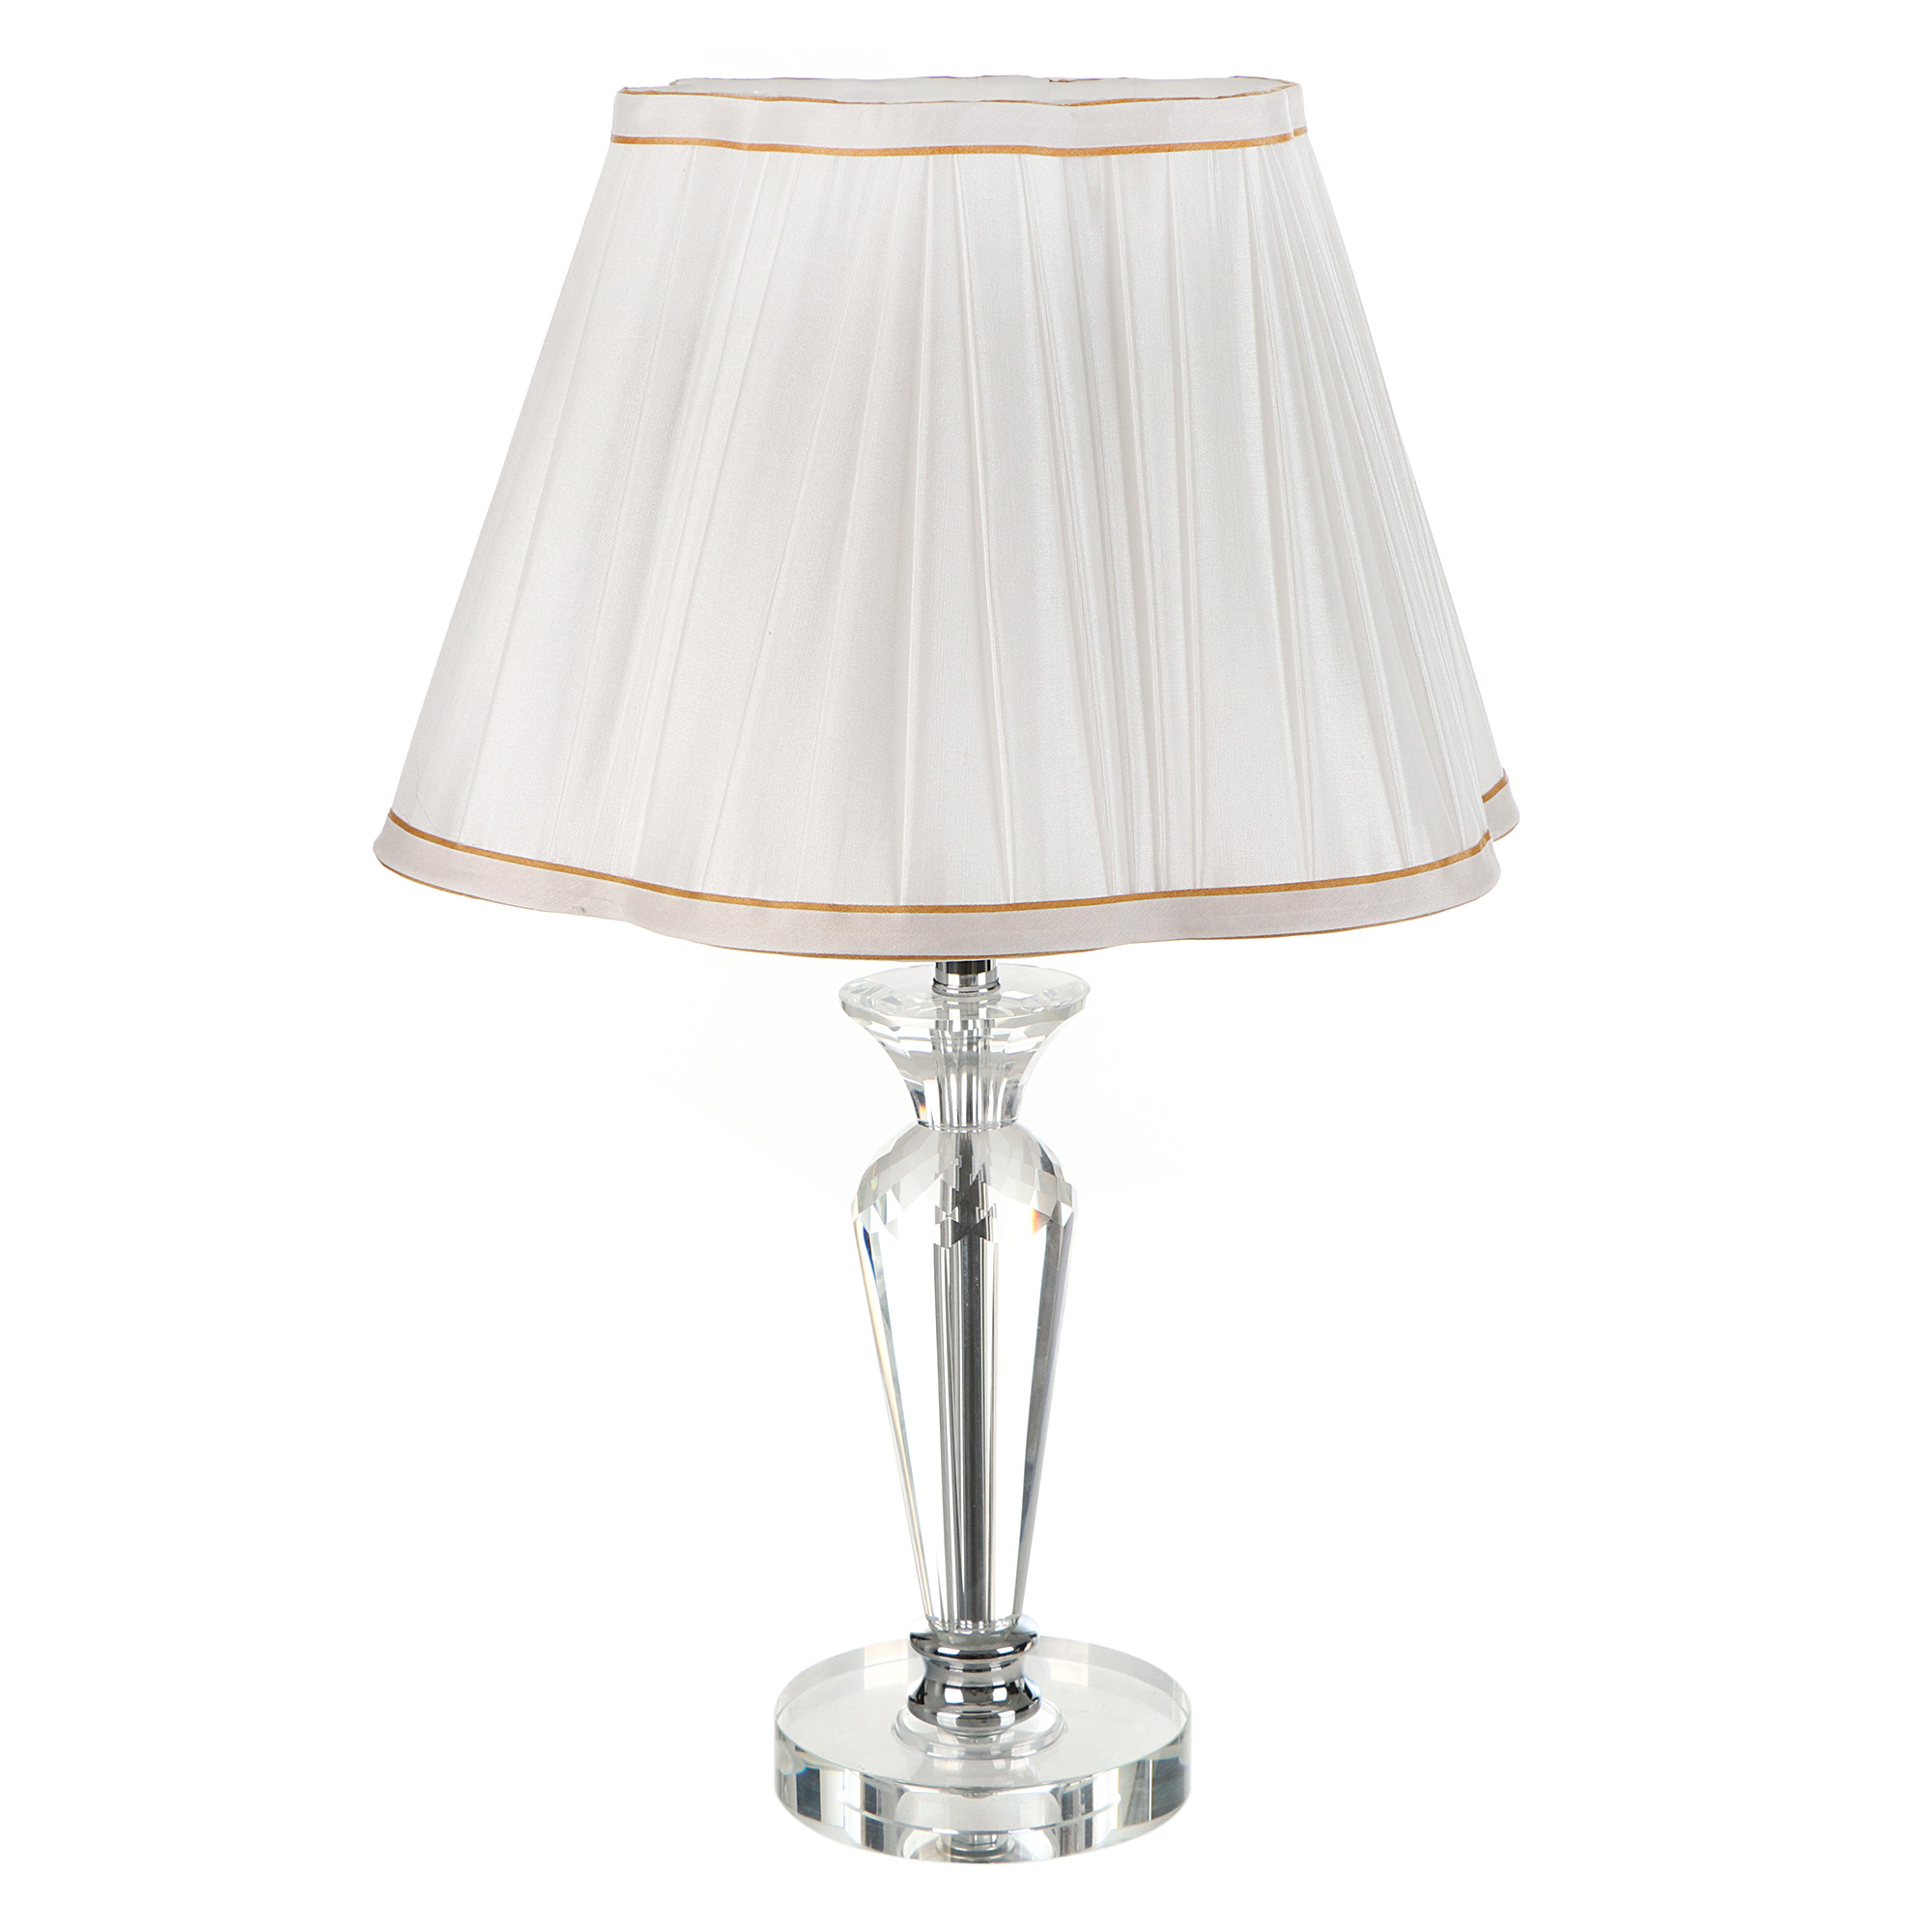 Лампа настольная Cim Blanc 2271-1t ch E27 60W белая